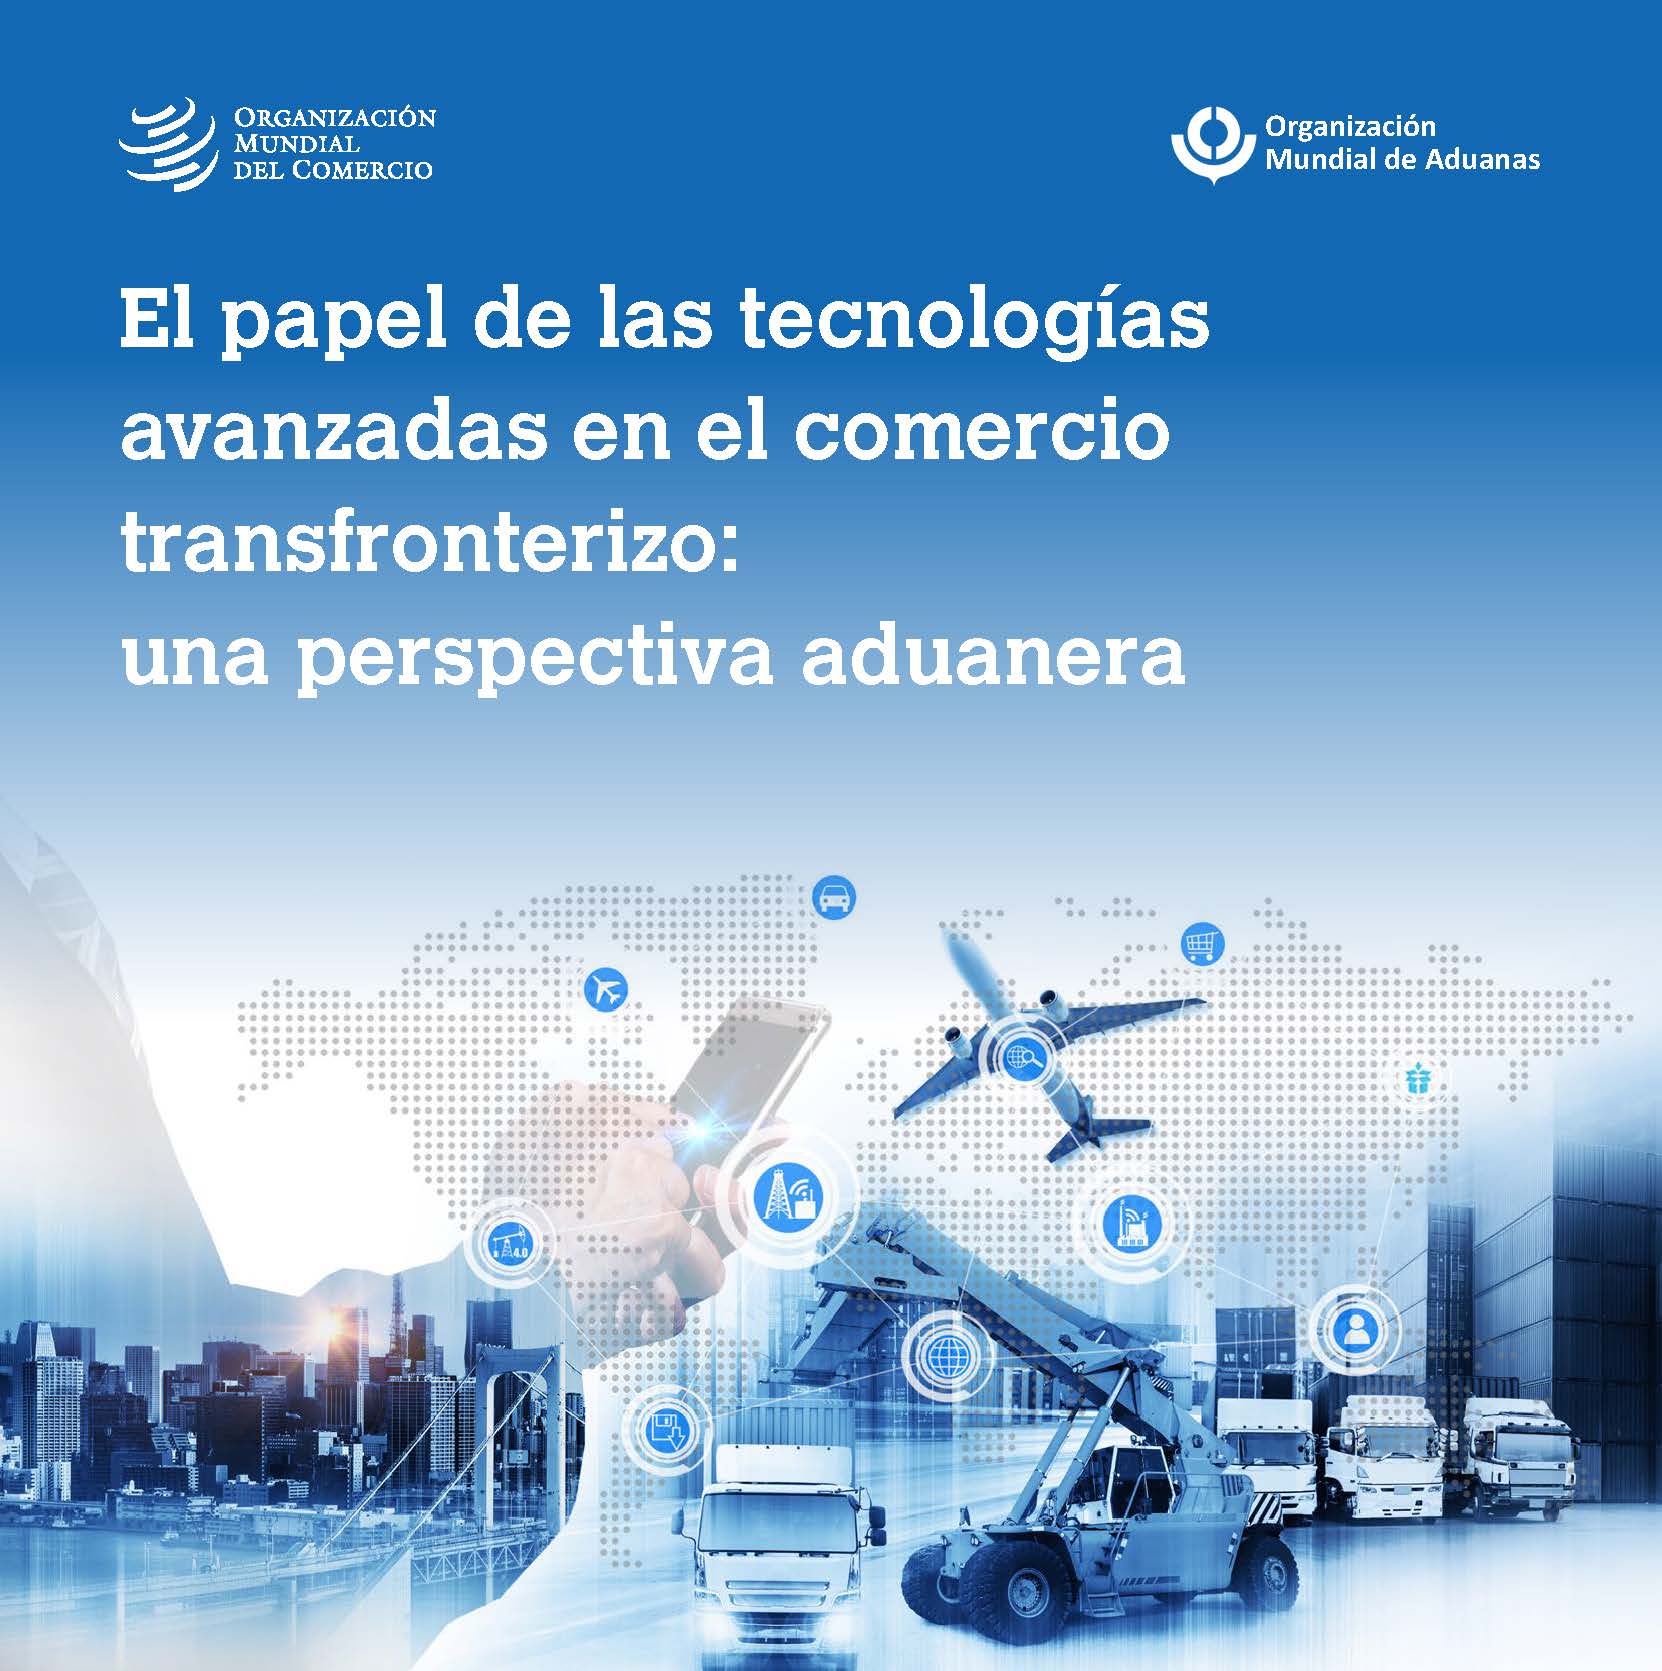 image of El papel de las tecnologías avanzadas en el comercio transfronterizo